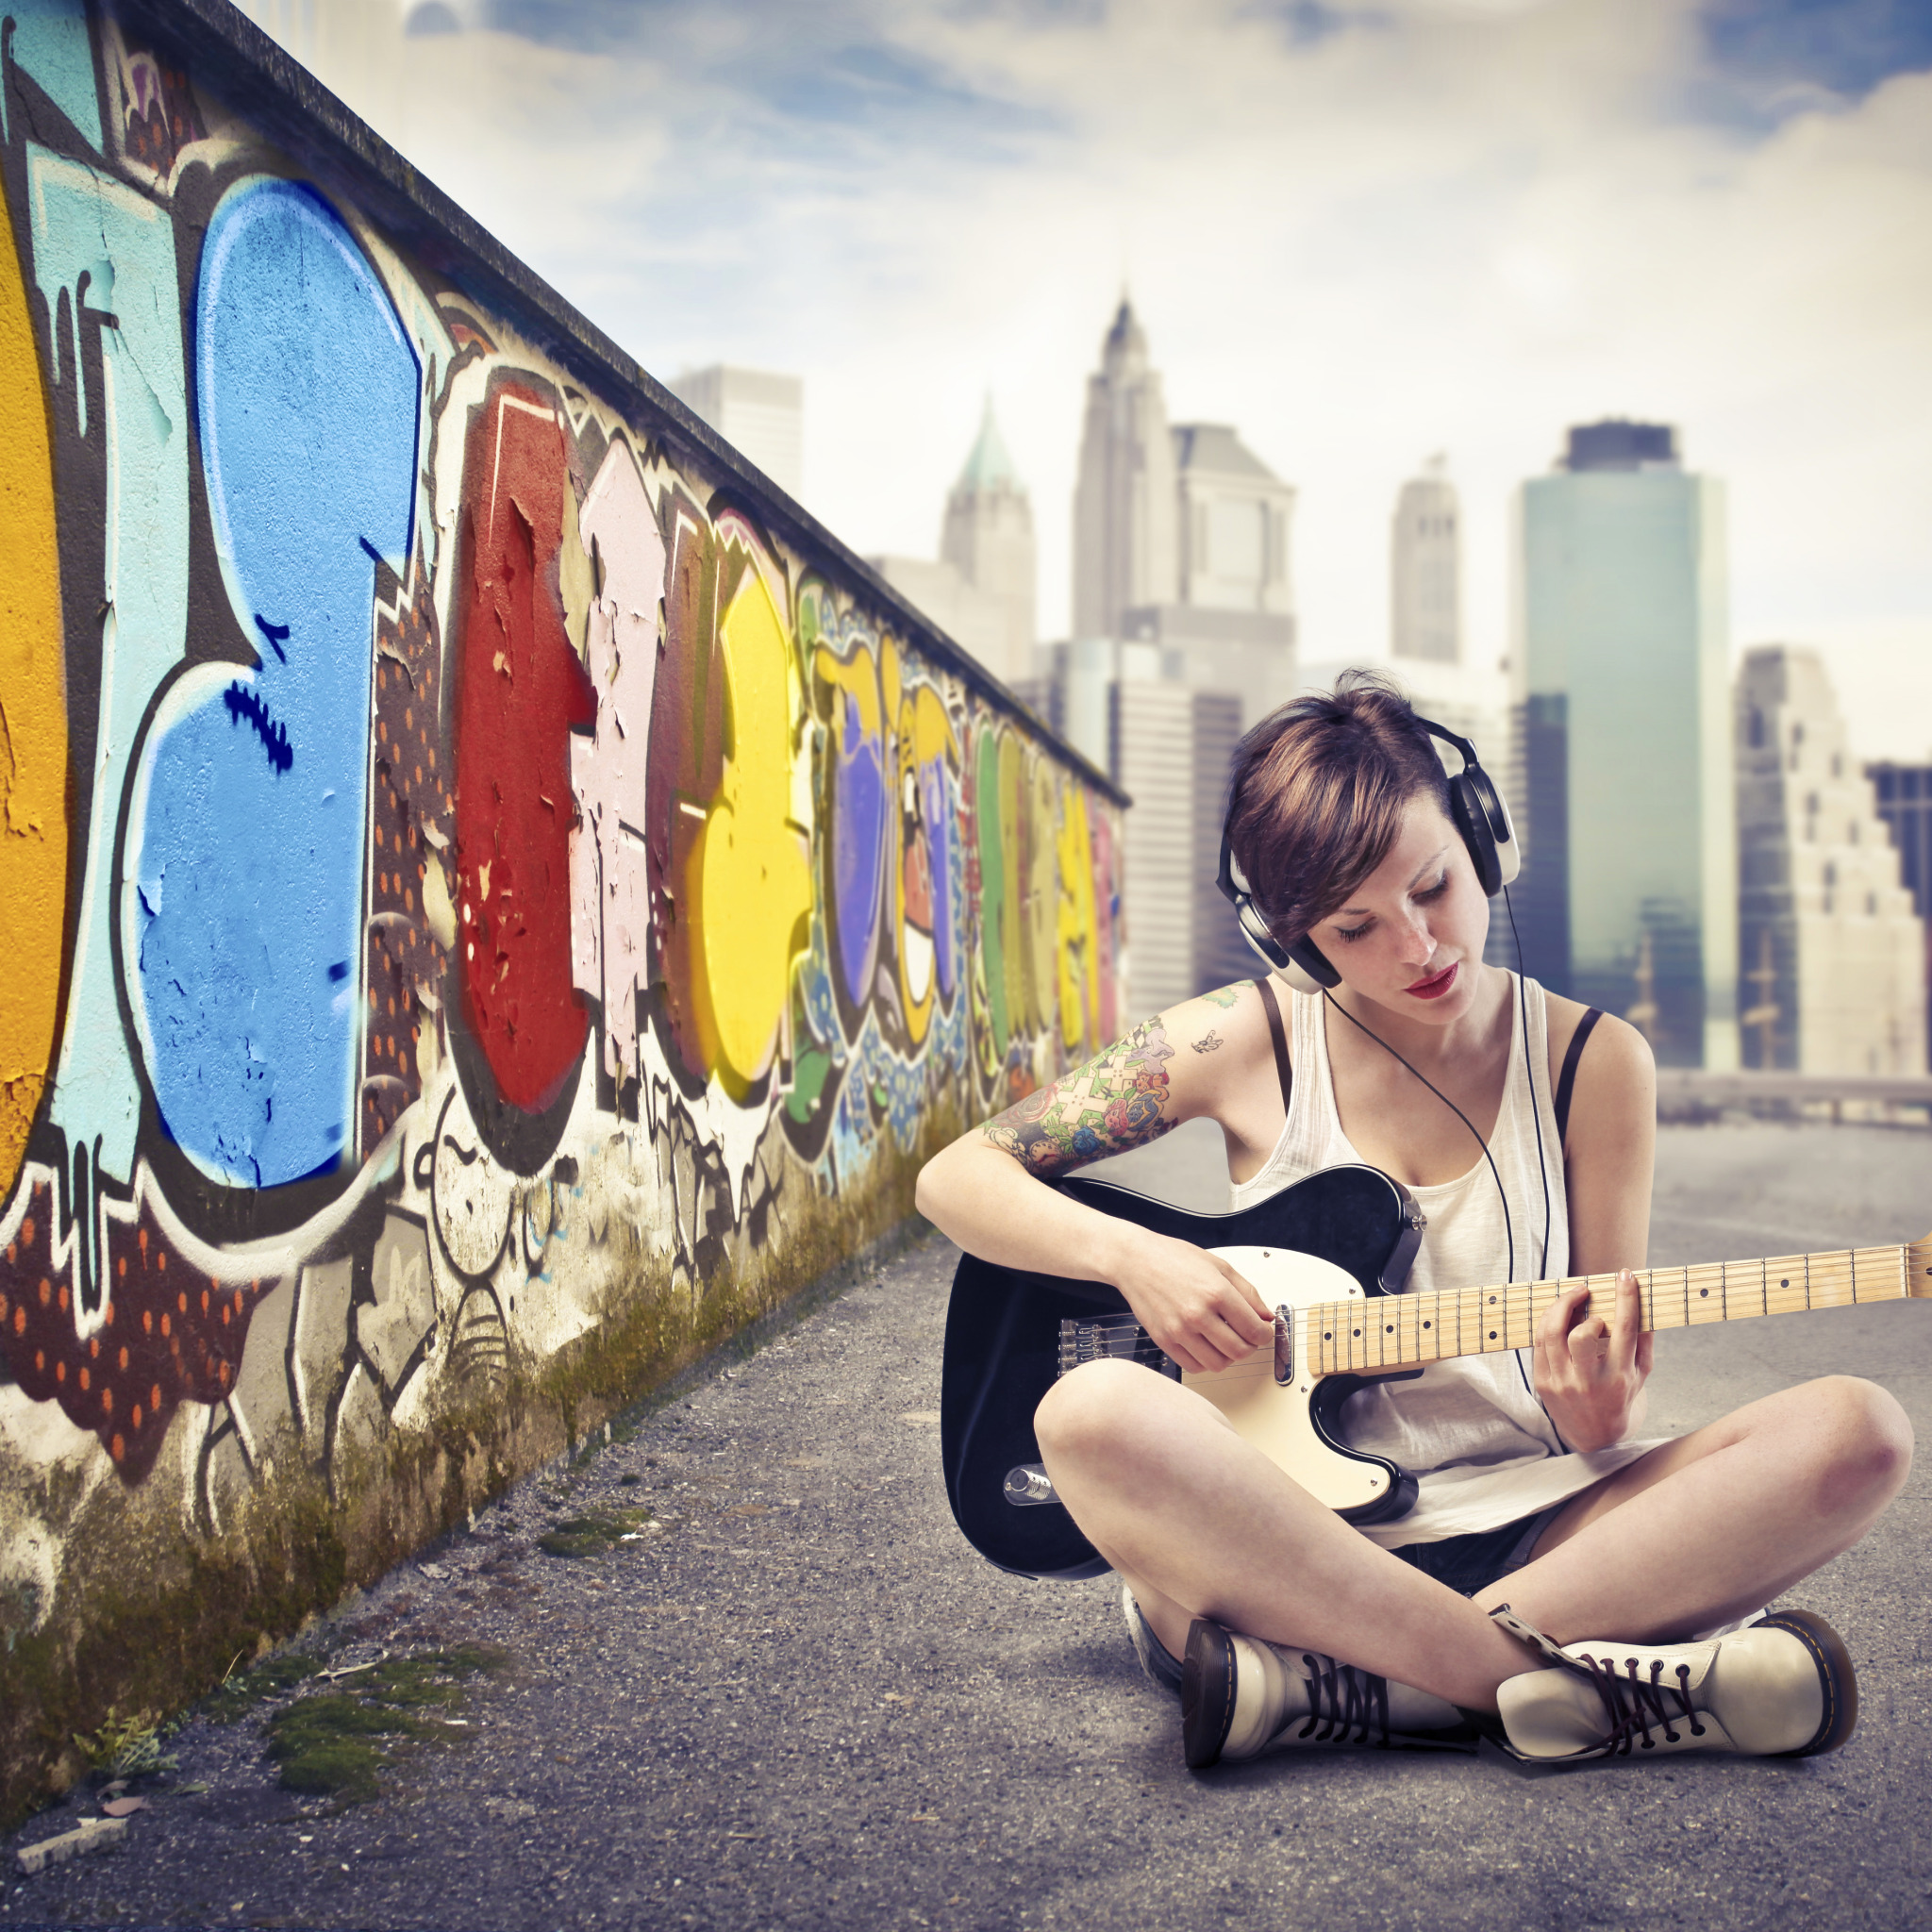 Песня в этом городе девушка не живет. Девушка веселая в городе. Девушка с гитарой в городе. Фотосессия у стены с граффити. Городская фотосессия у стены.